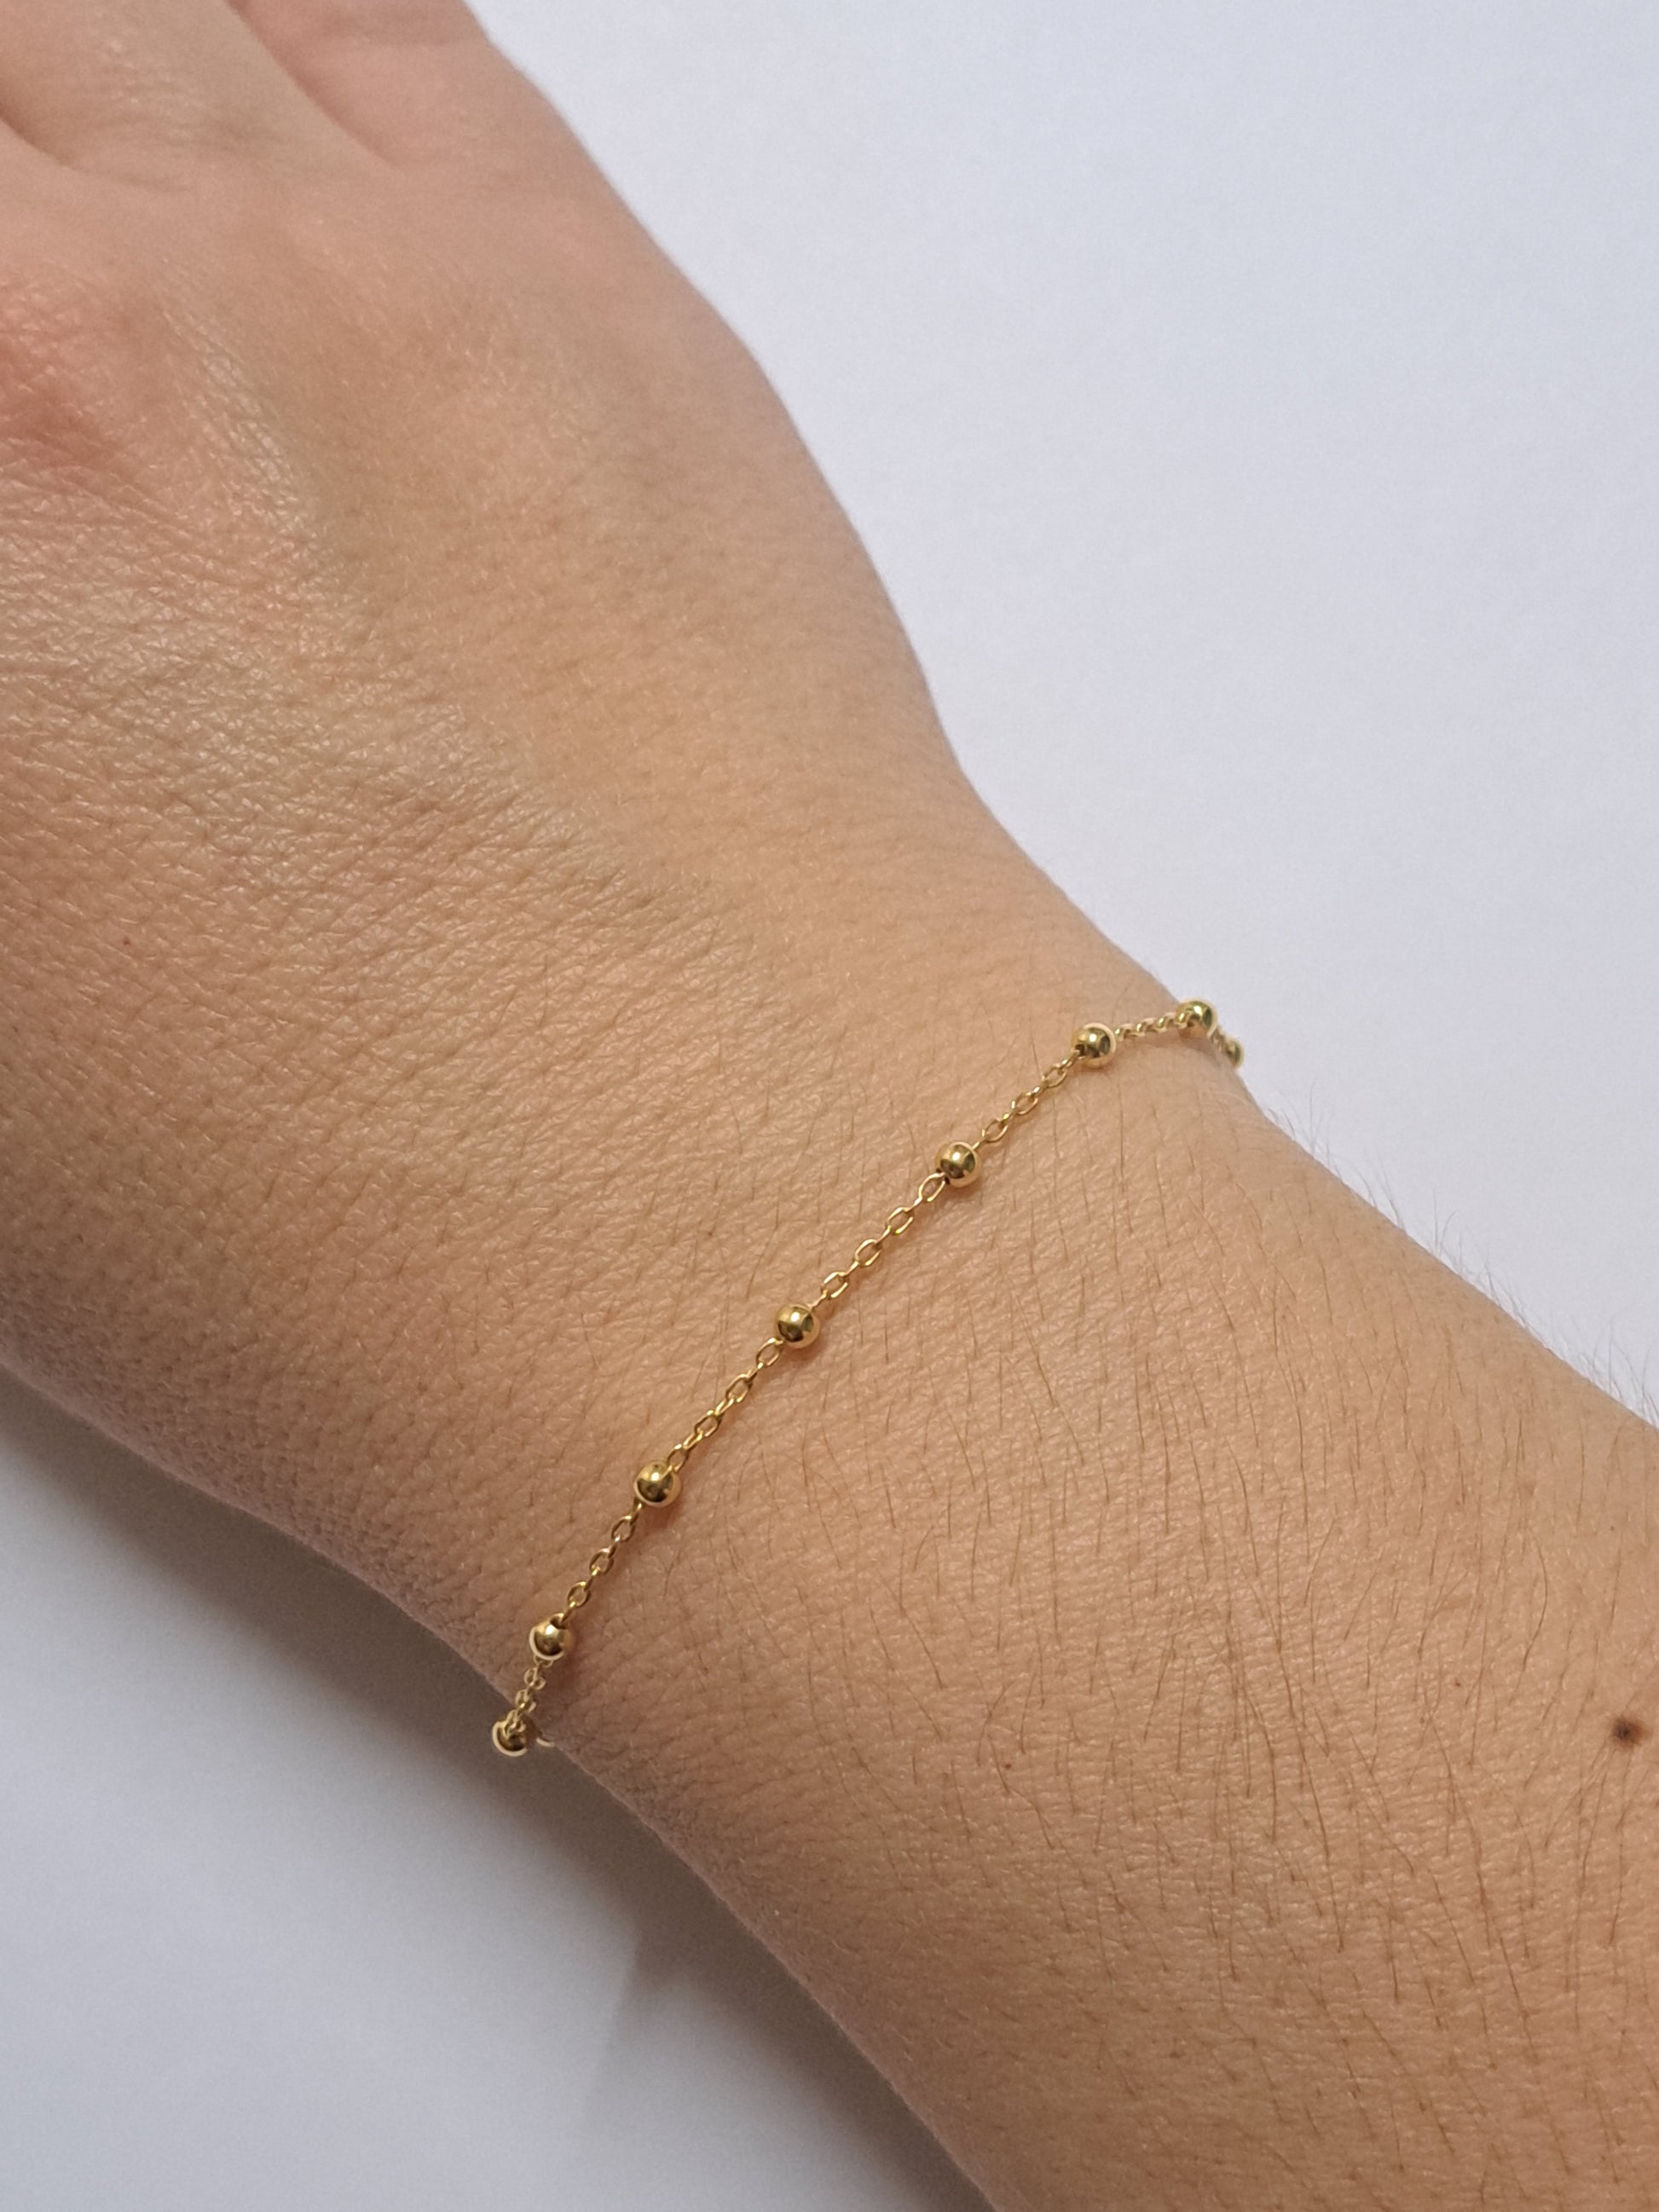 Bracelet perlé en argent doré à l'or 24k. Site de bijoux. France